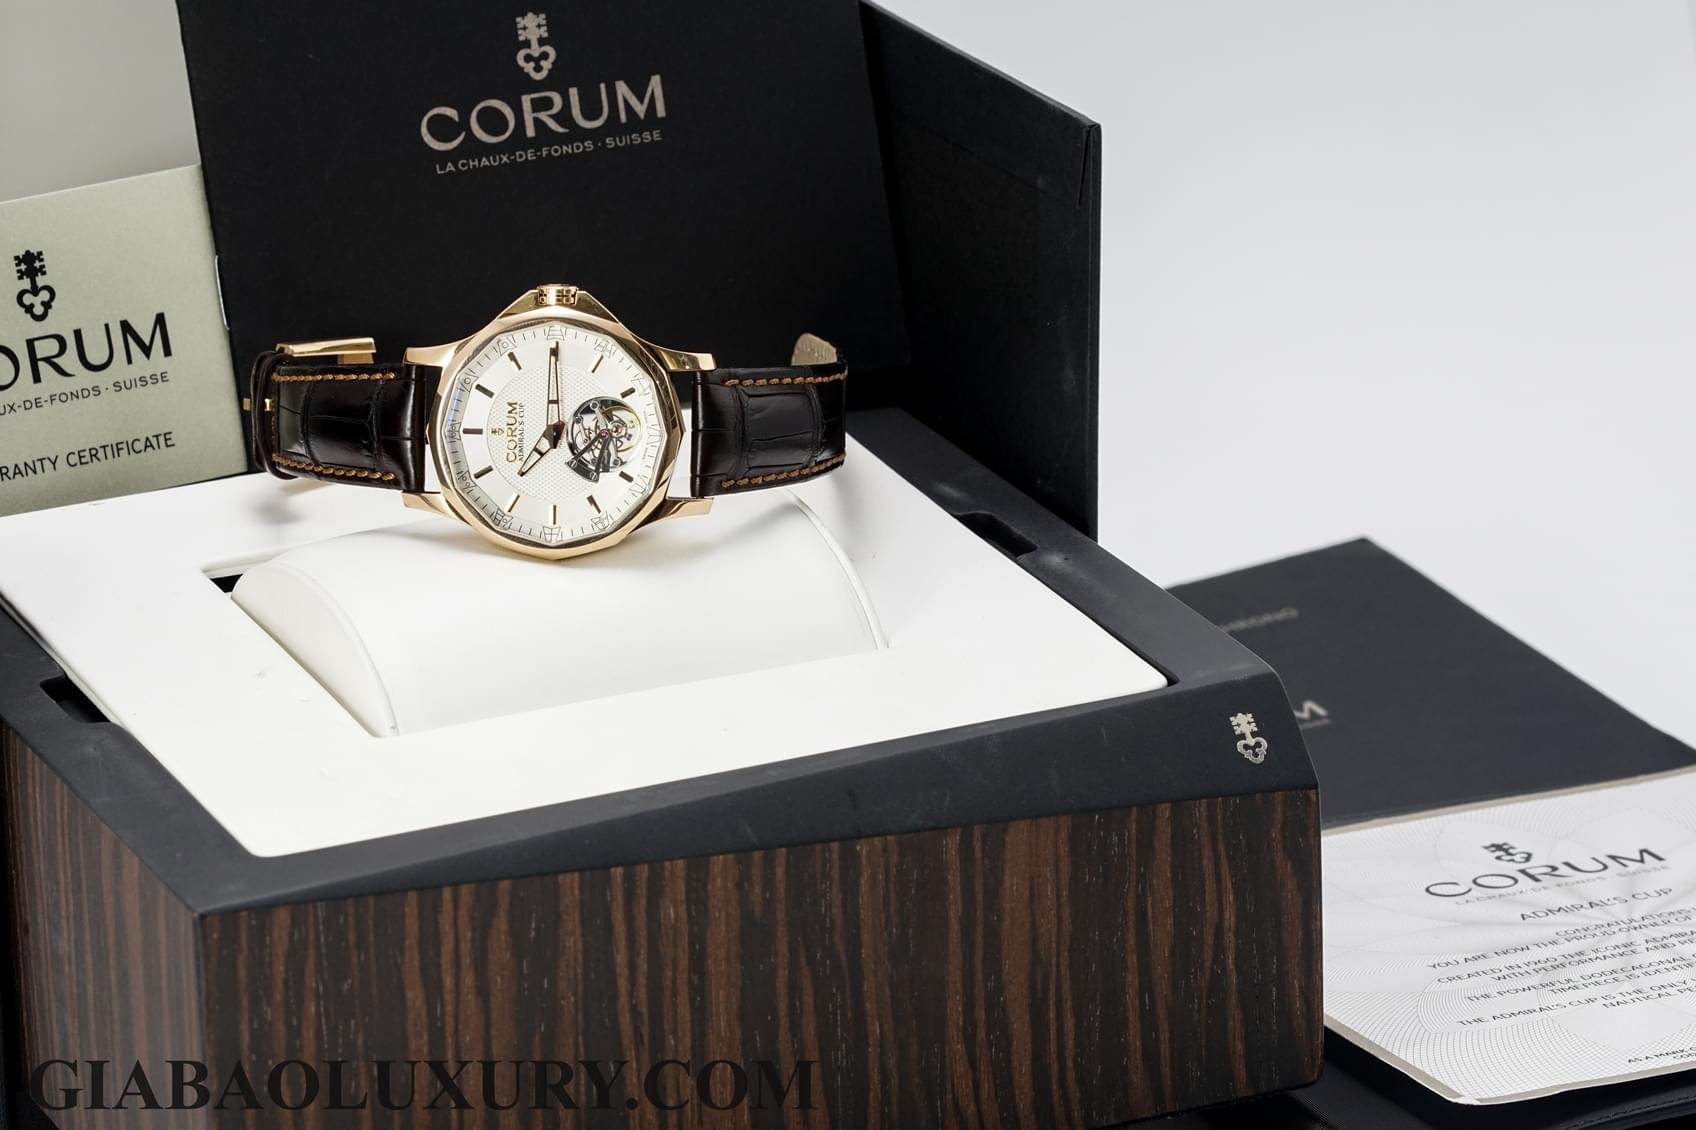 Thu mua đồng hồ Corum tại cửa hàng Gia Bảo Luxury